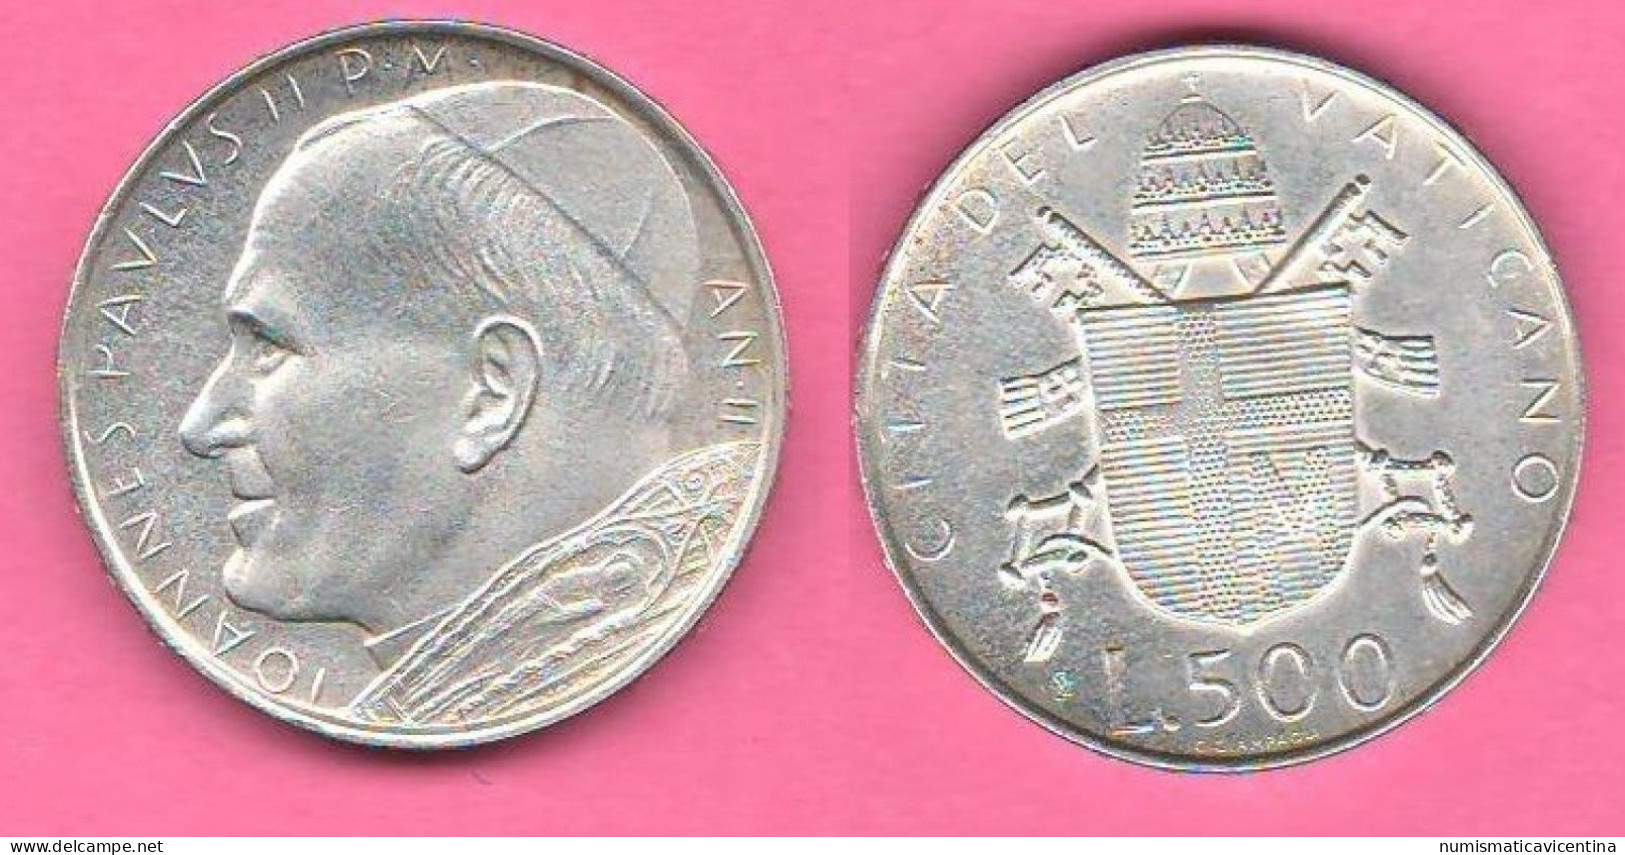 Vaticano 500 Lire 1980 Wojtyla Anno II° Vatican City Italie Italy Silver Coin - Vatican